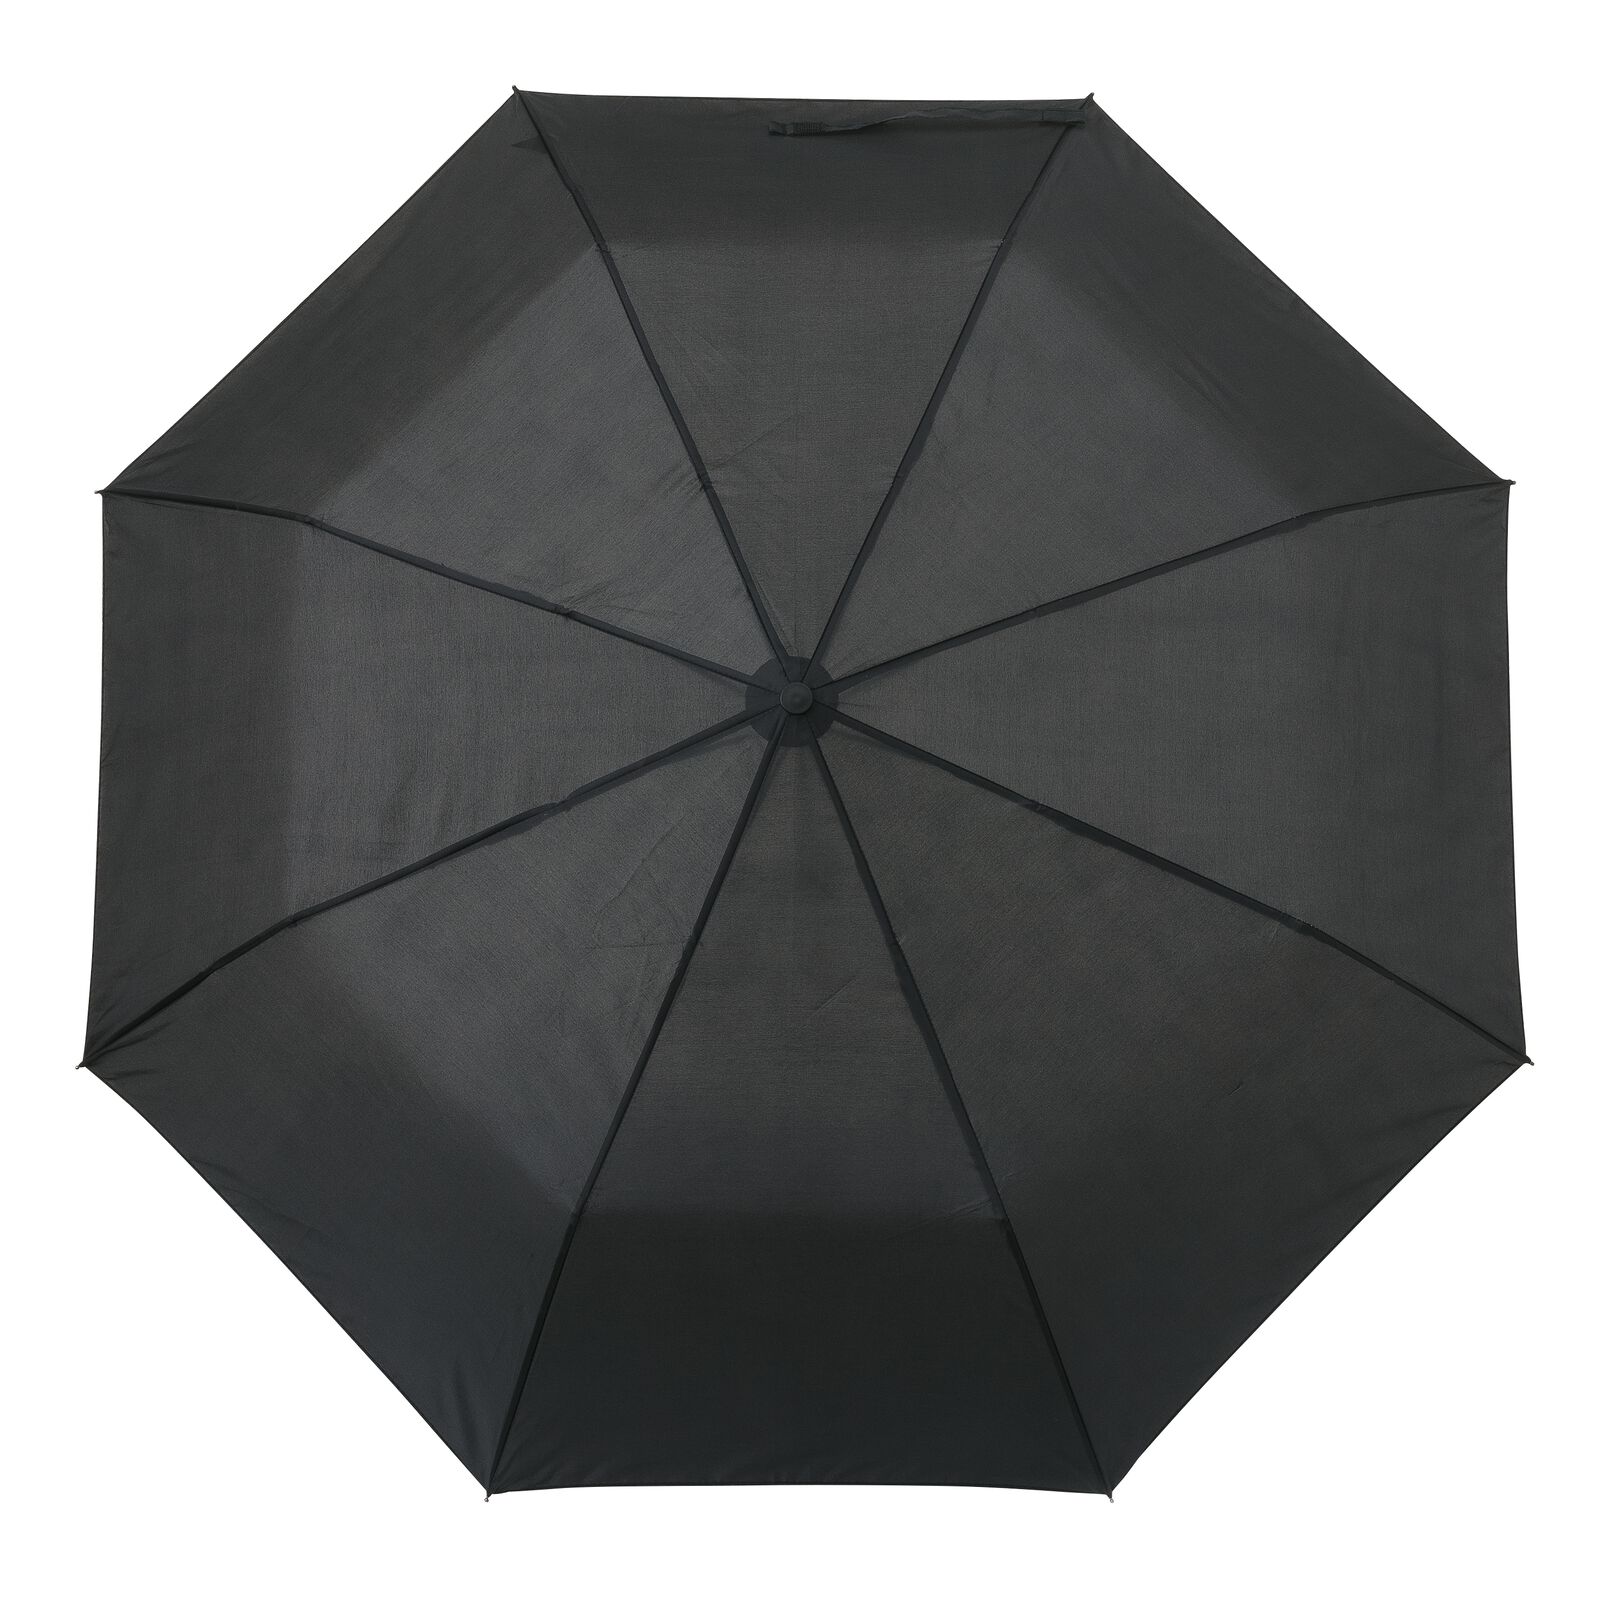 parapluie pliant - 16880034 - HEMA